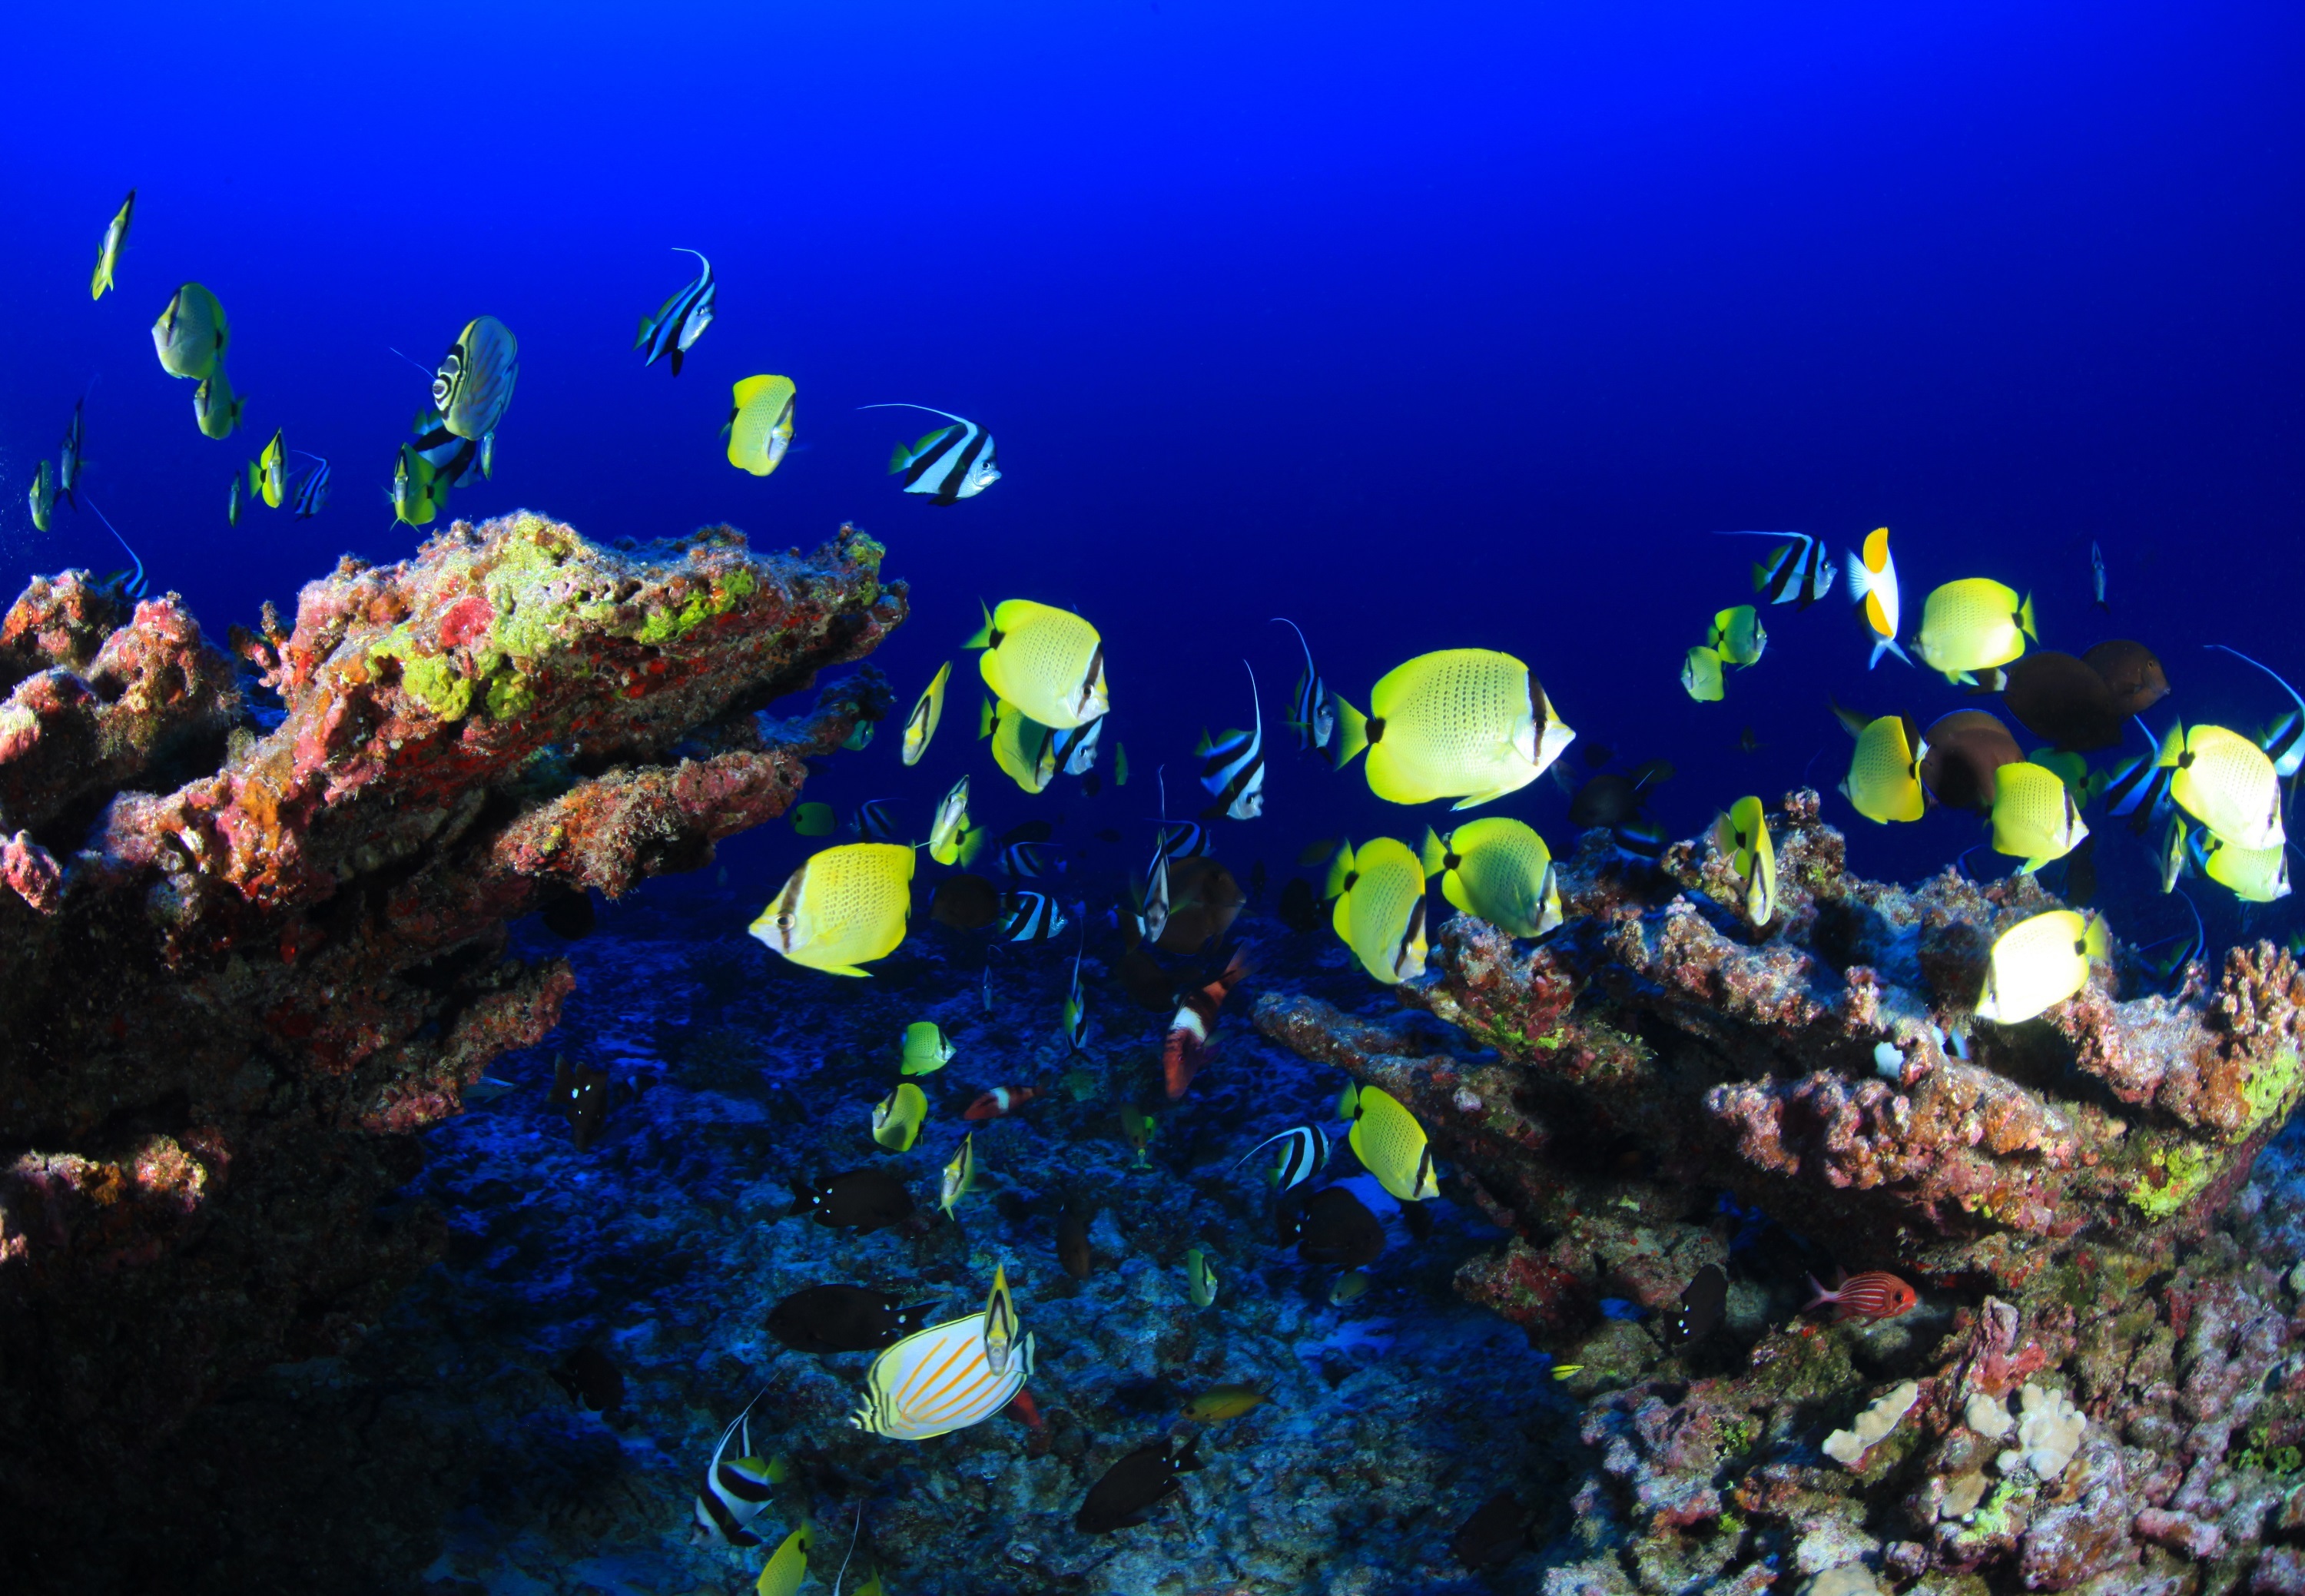 Yellow sea fish swim near the coral reef